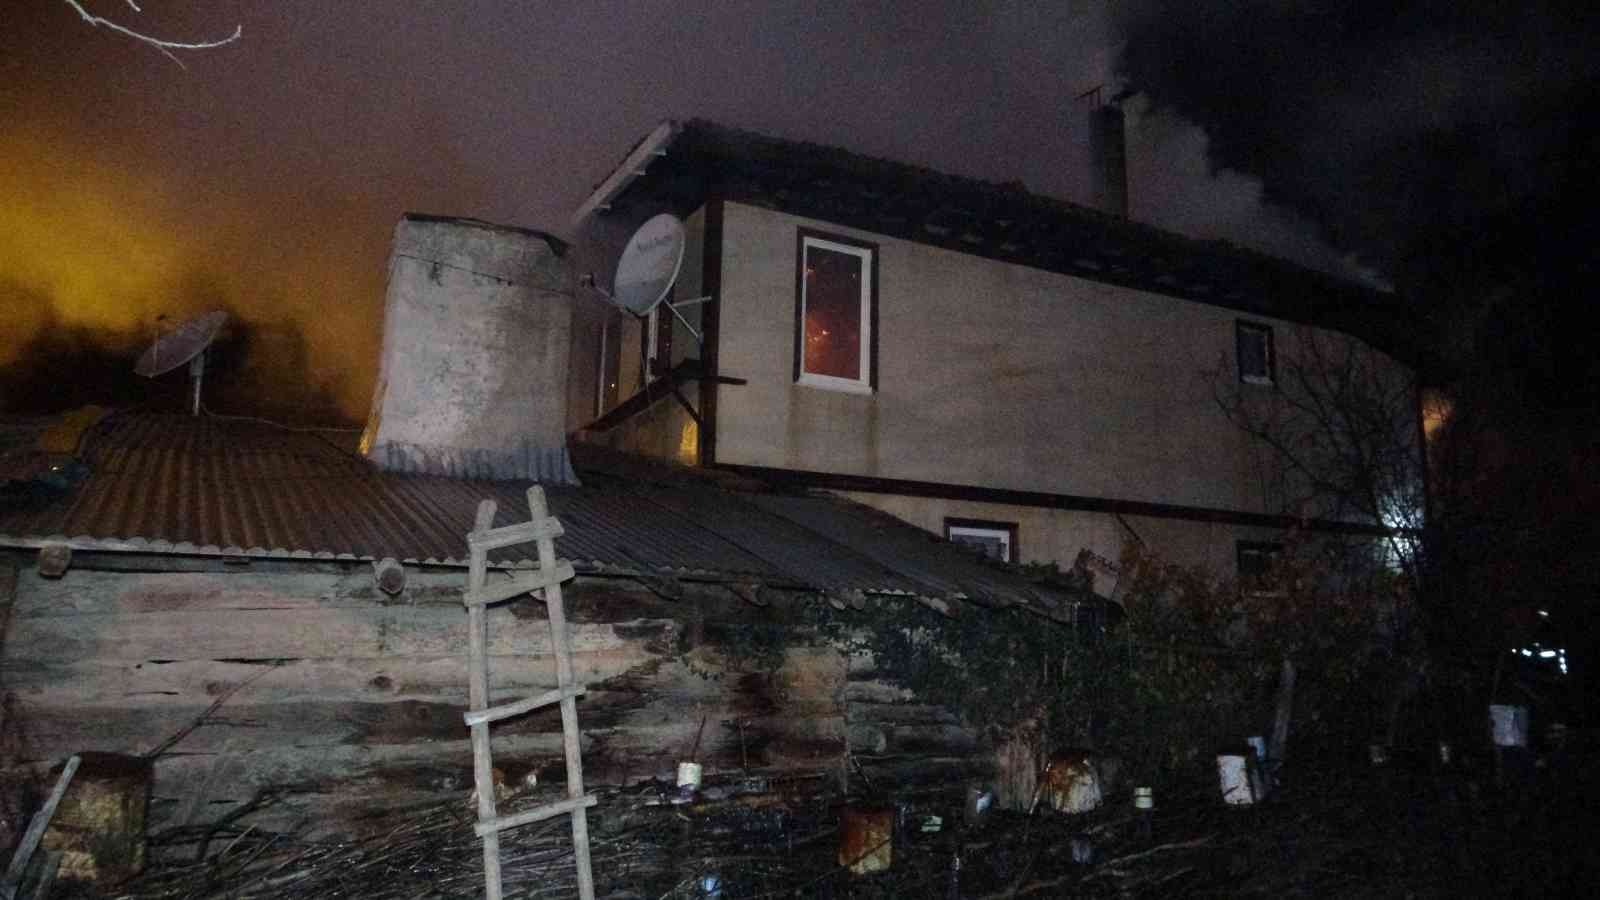 İki katlı ahşap ev ve ahır yangına teslim oldu #kastamonu